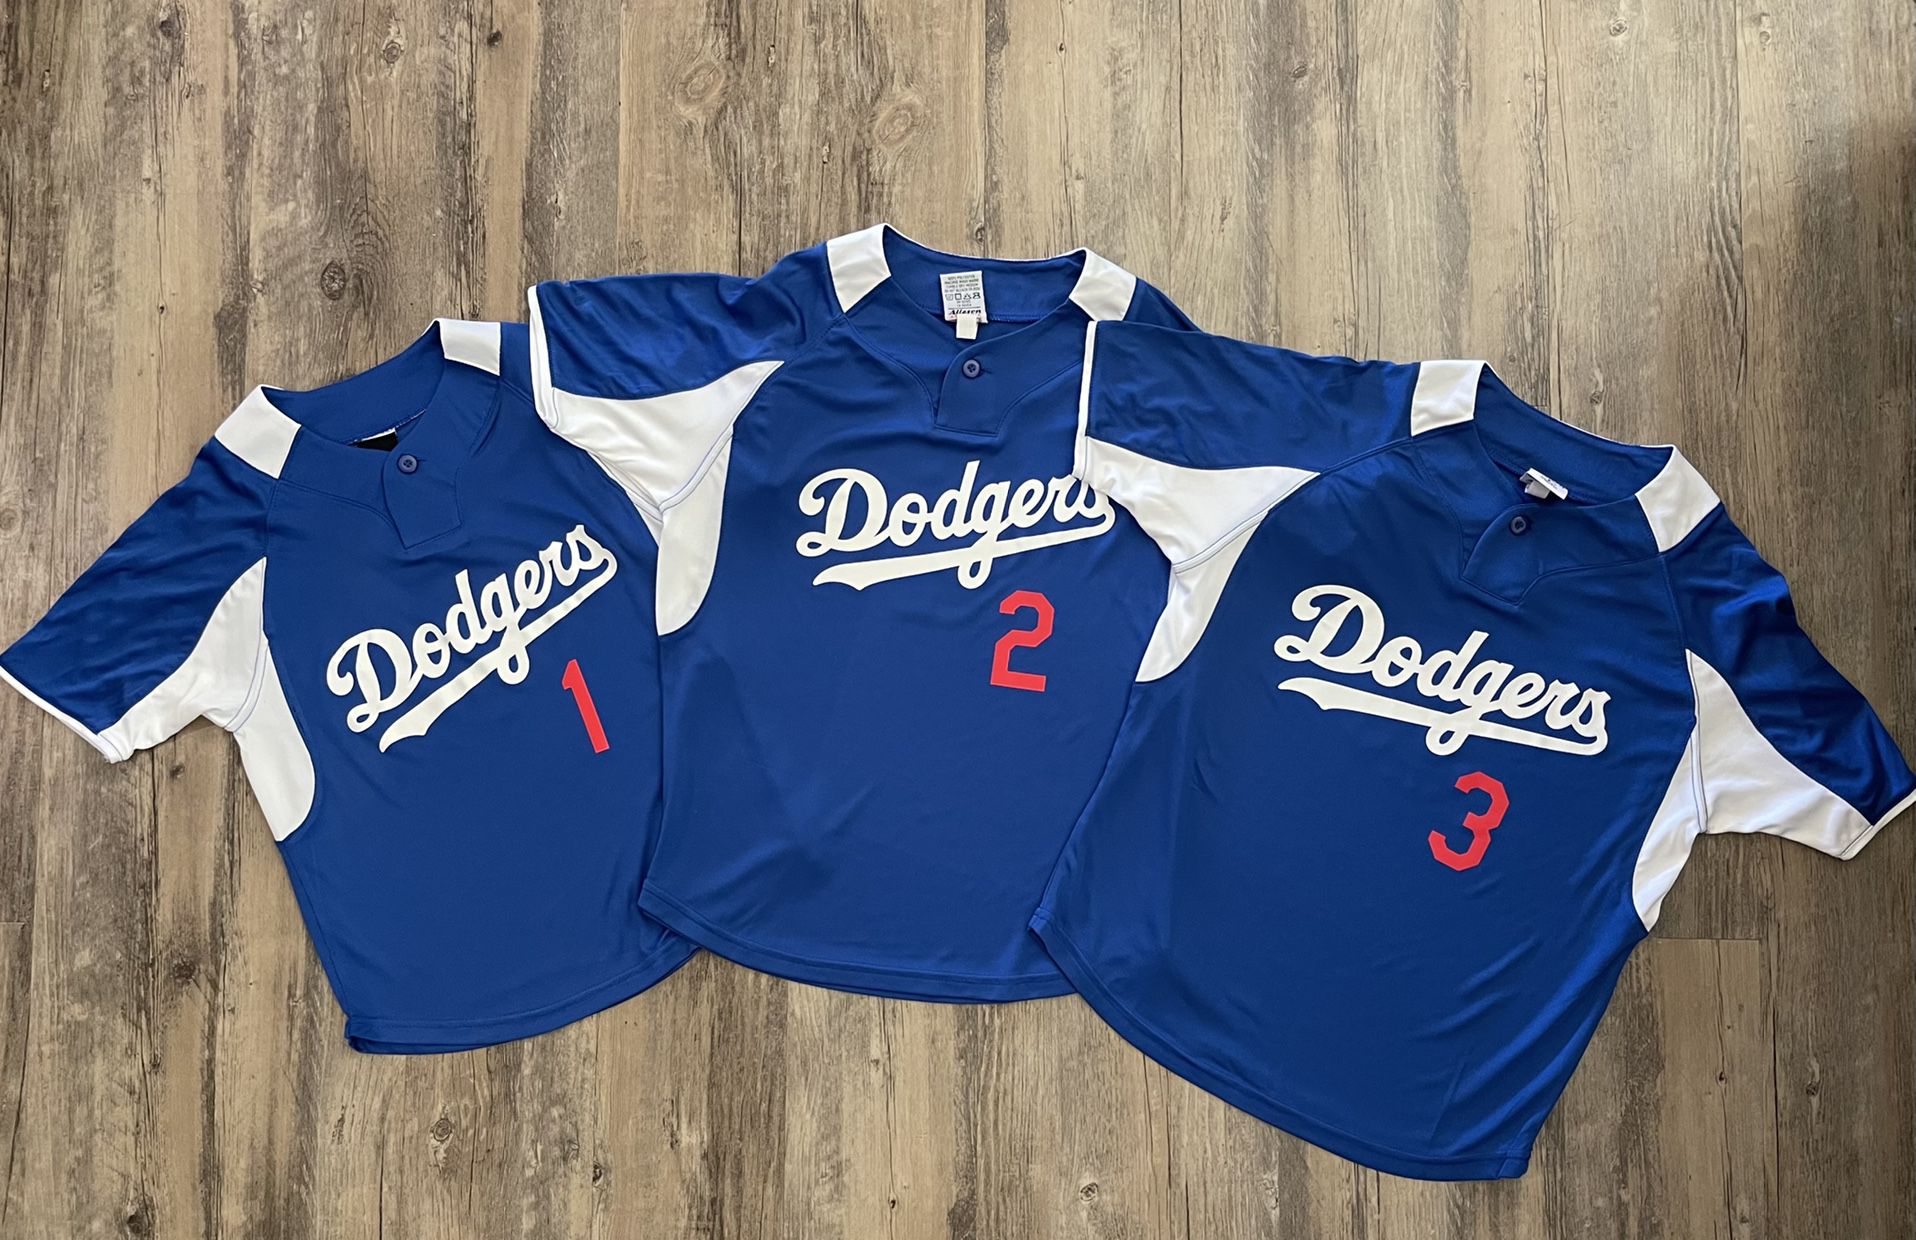 Little League Sweatshirts Baseball Jersey Personalization / Customization 